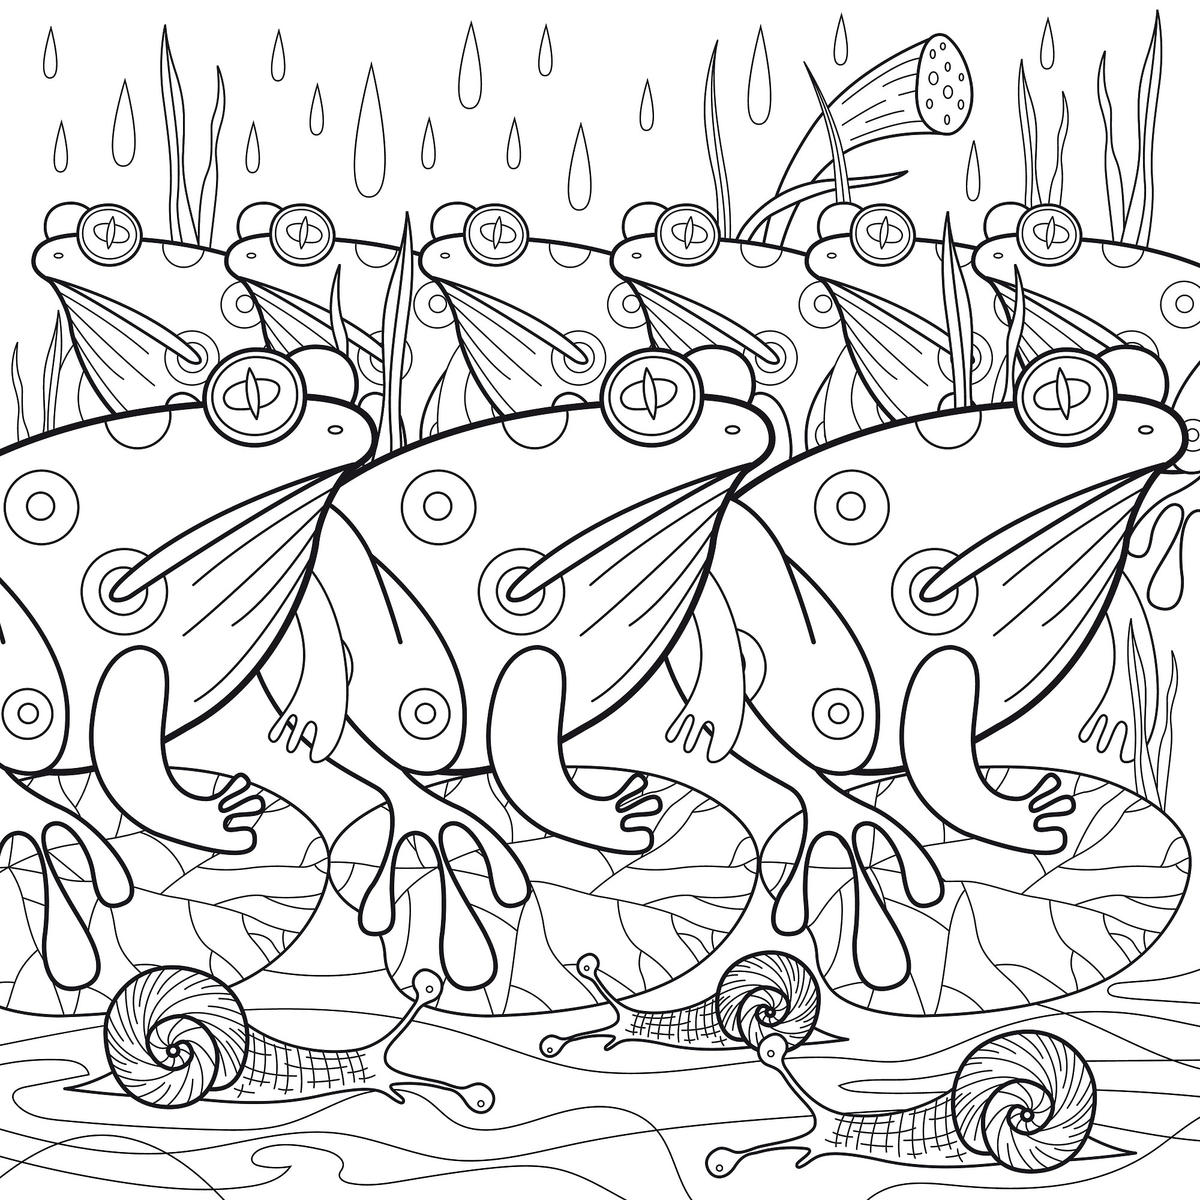 Kolorowanka antystresowa żaby w deszczu